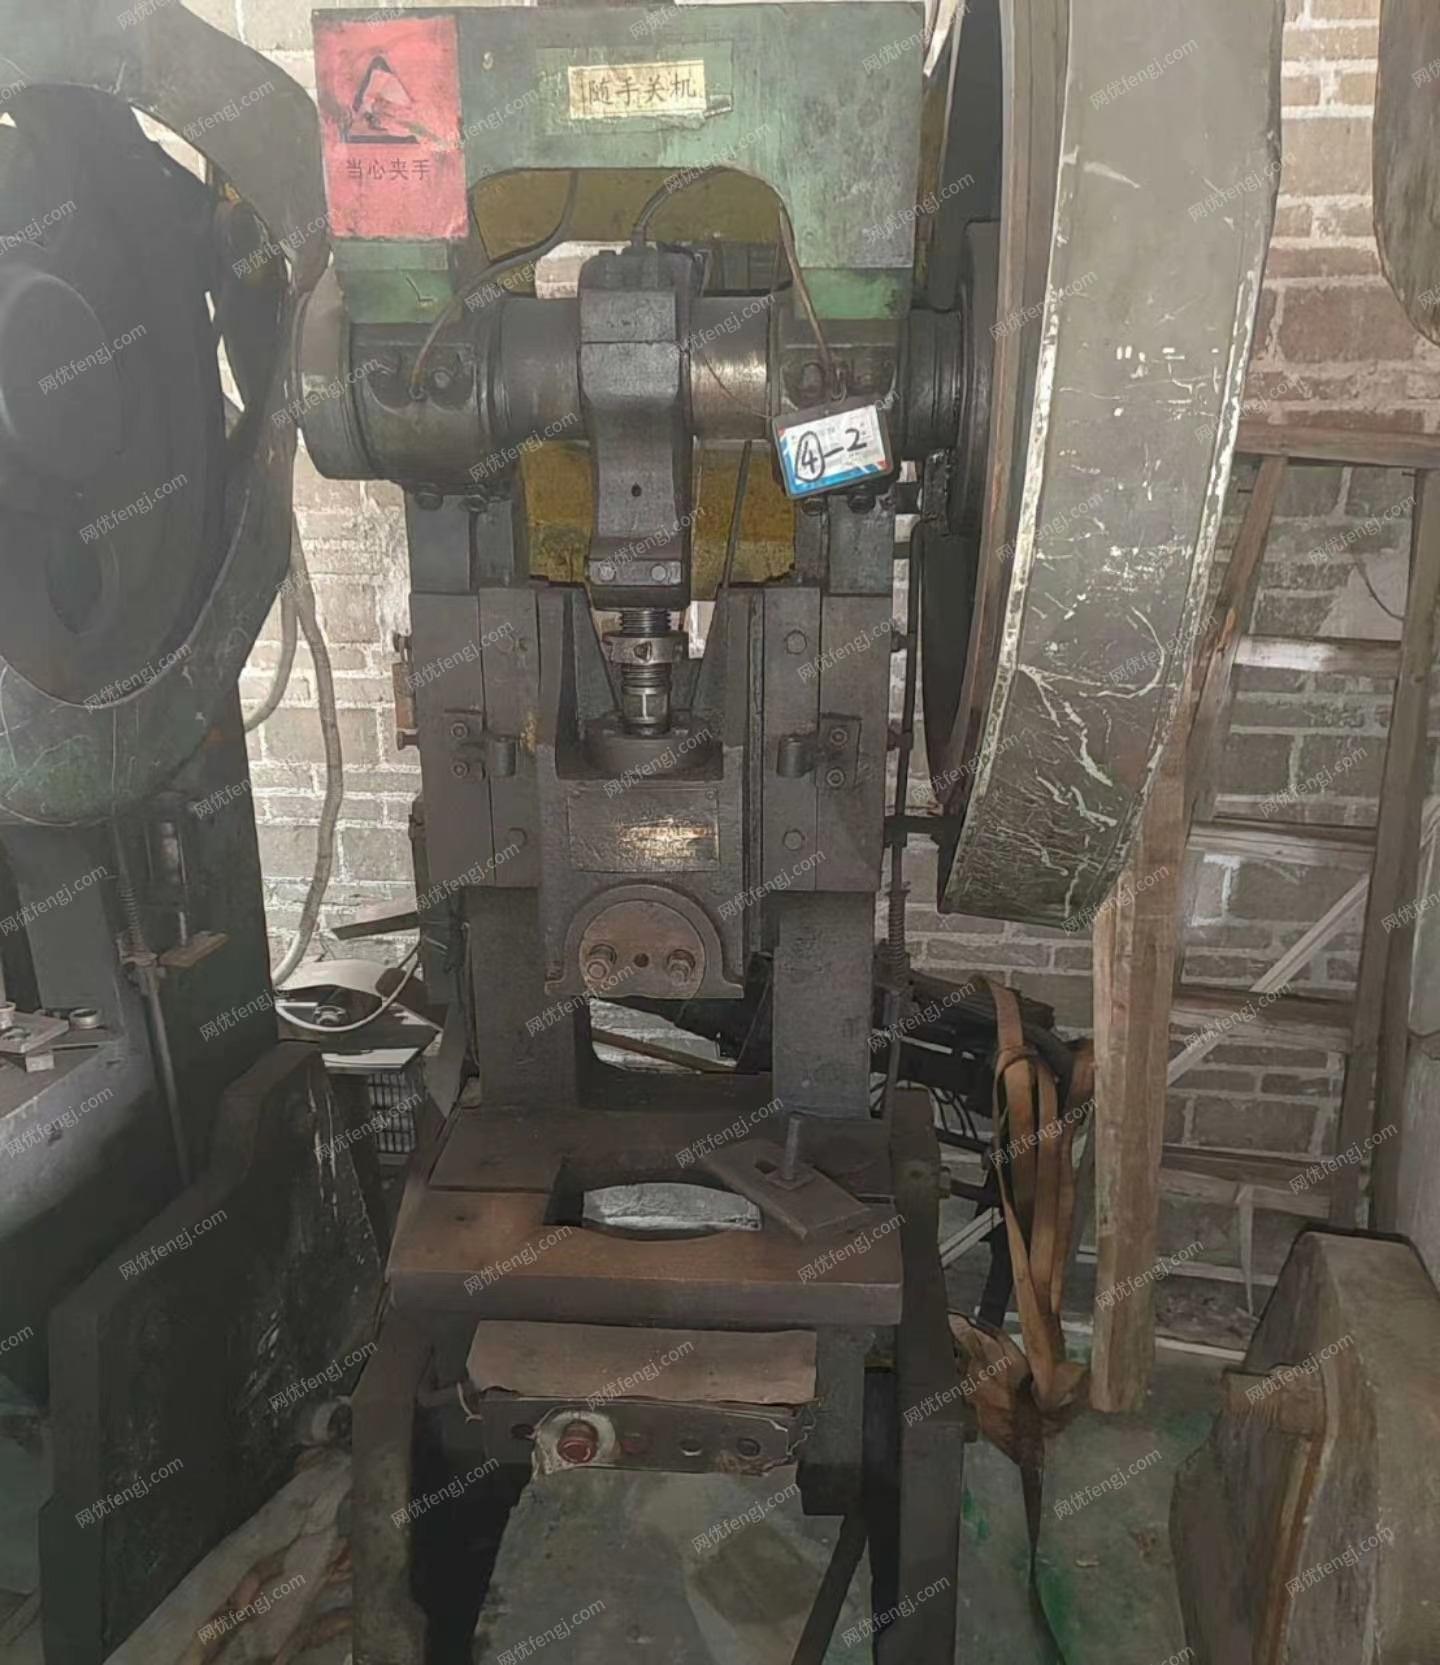 广东佛山工厂处理两台冲床，一台数控锯，一台螺杆空压机